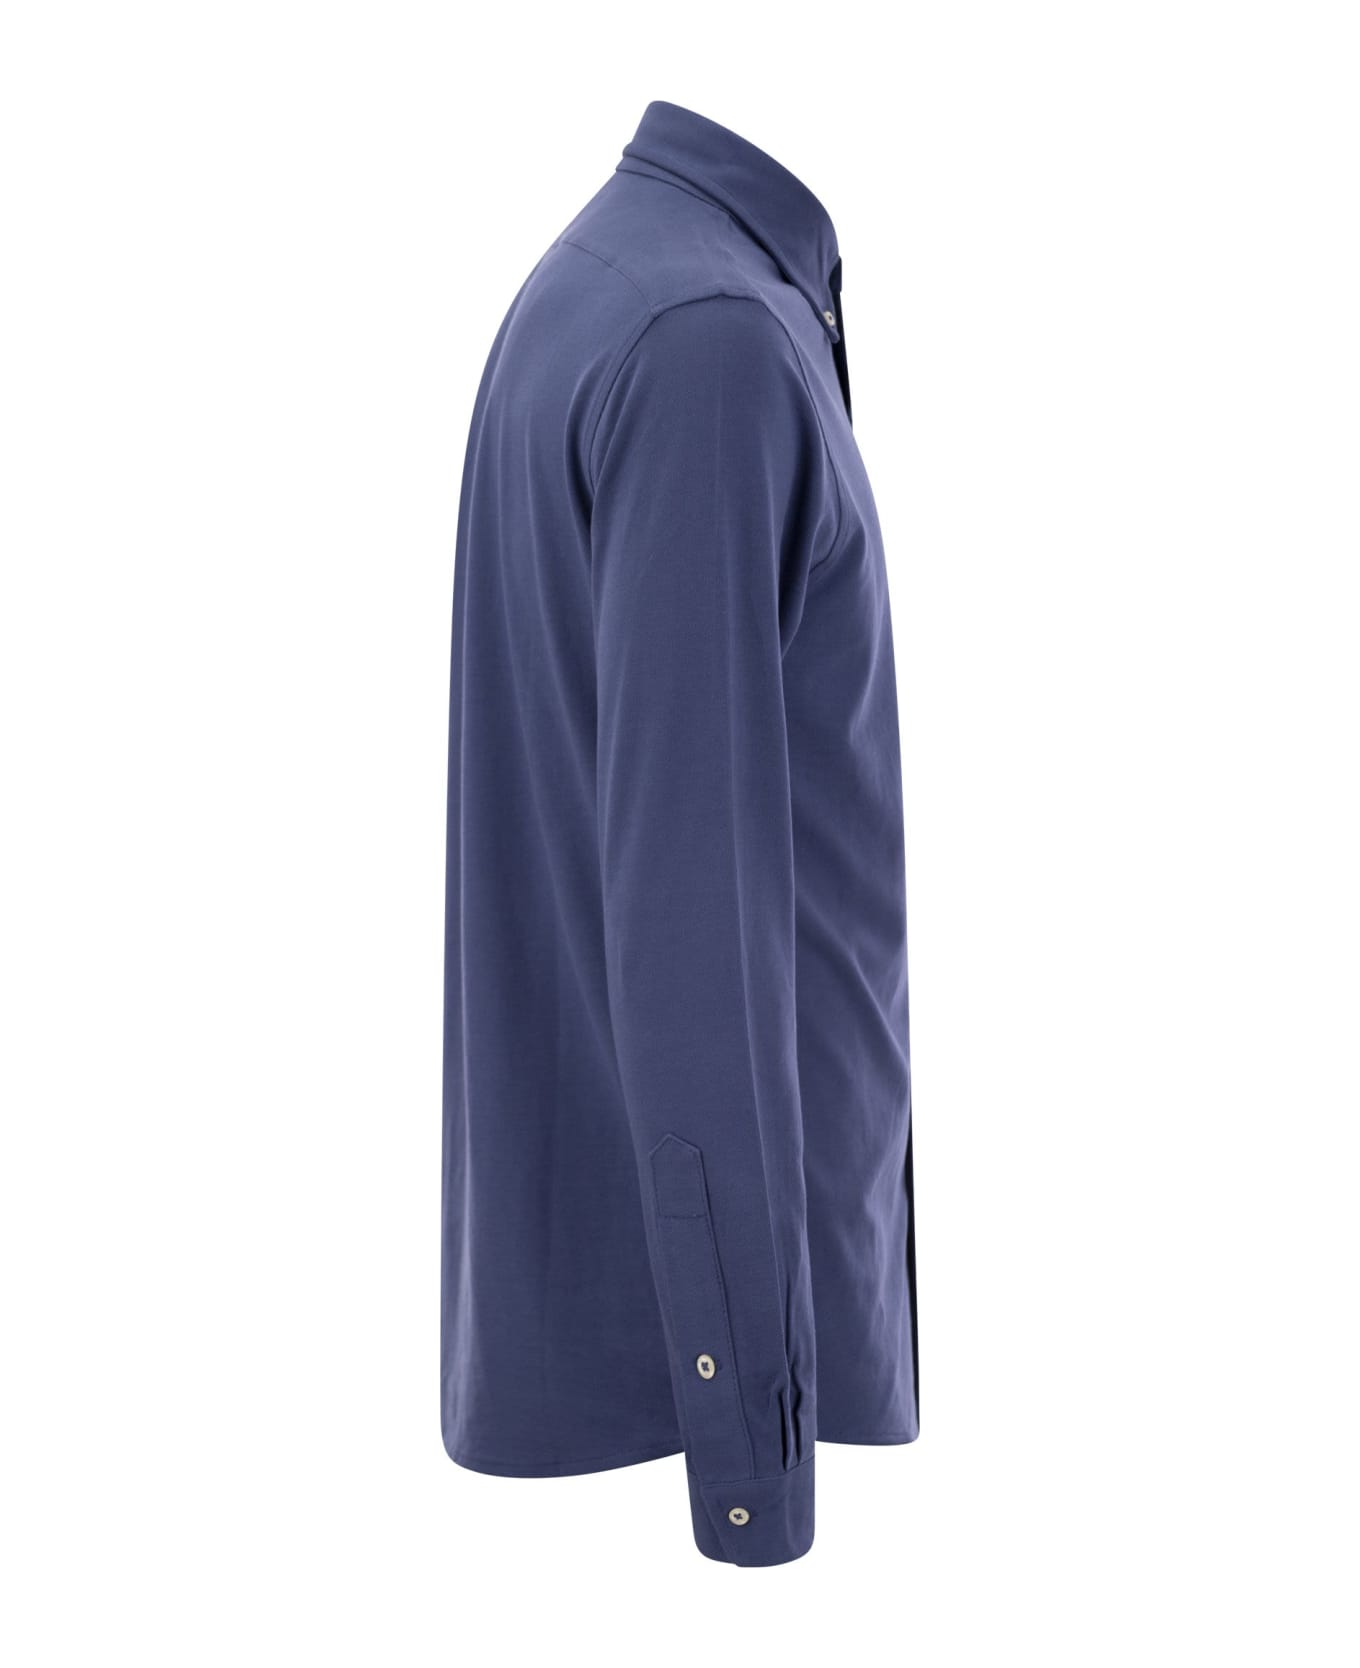 Ralph Lauren Ultralight Pique Shirt - Old royal シャツ